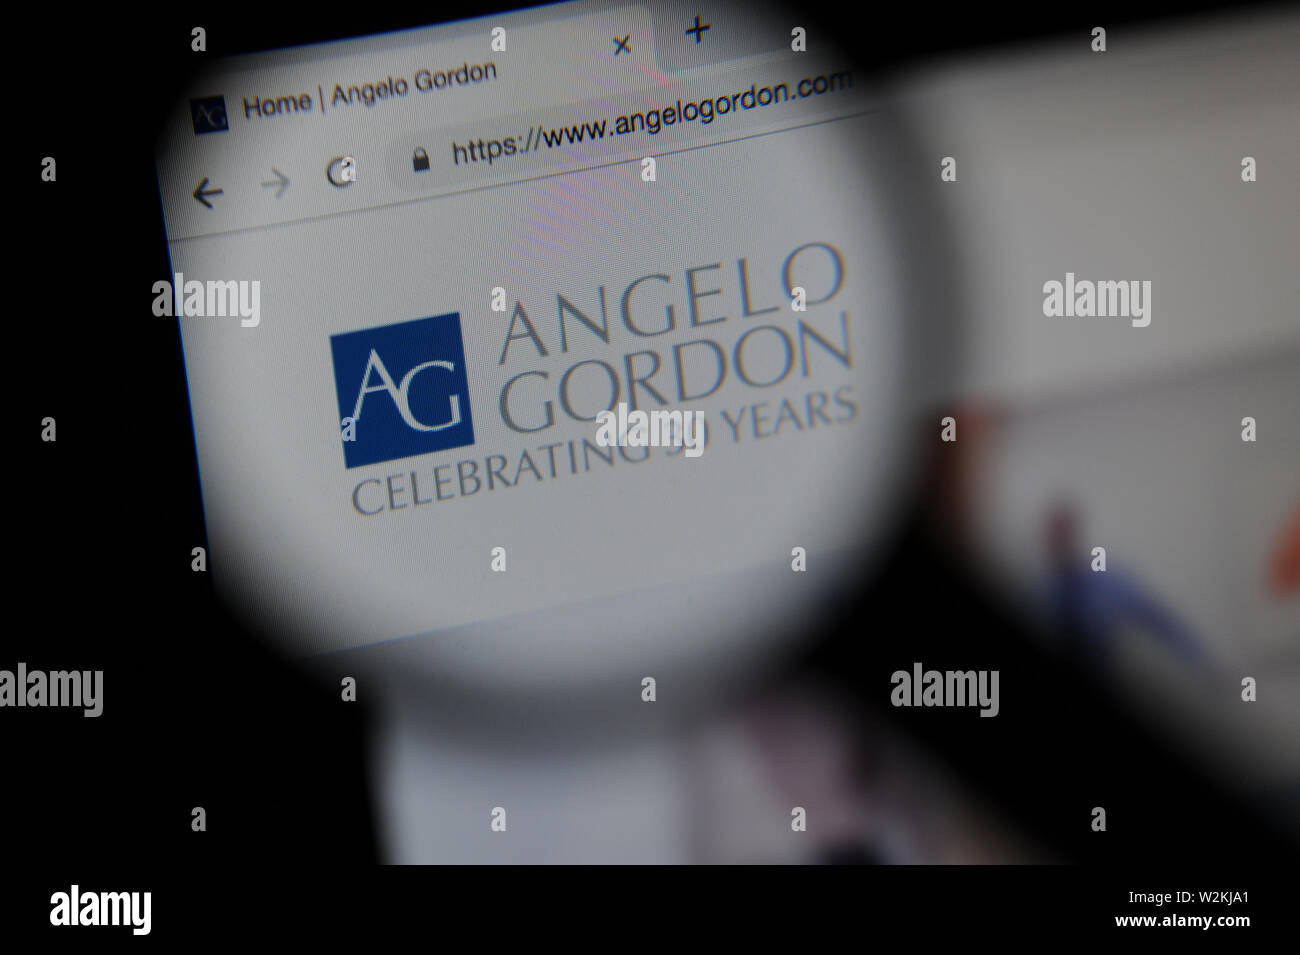 El Angelo Gordon web financiera vistos a través de una lupa Foto de stock